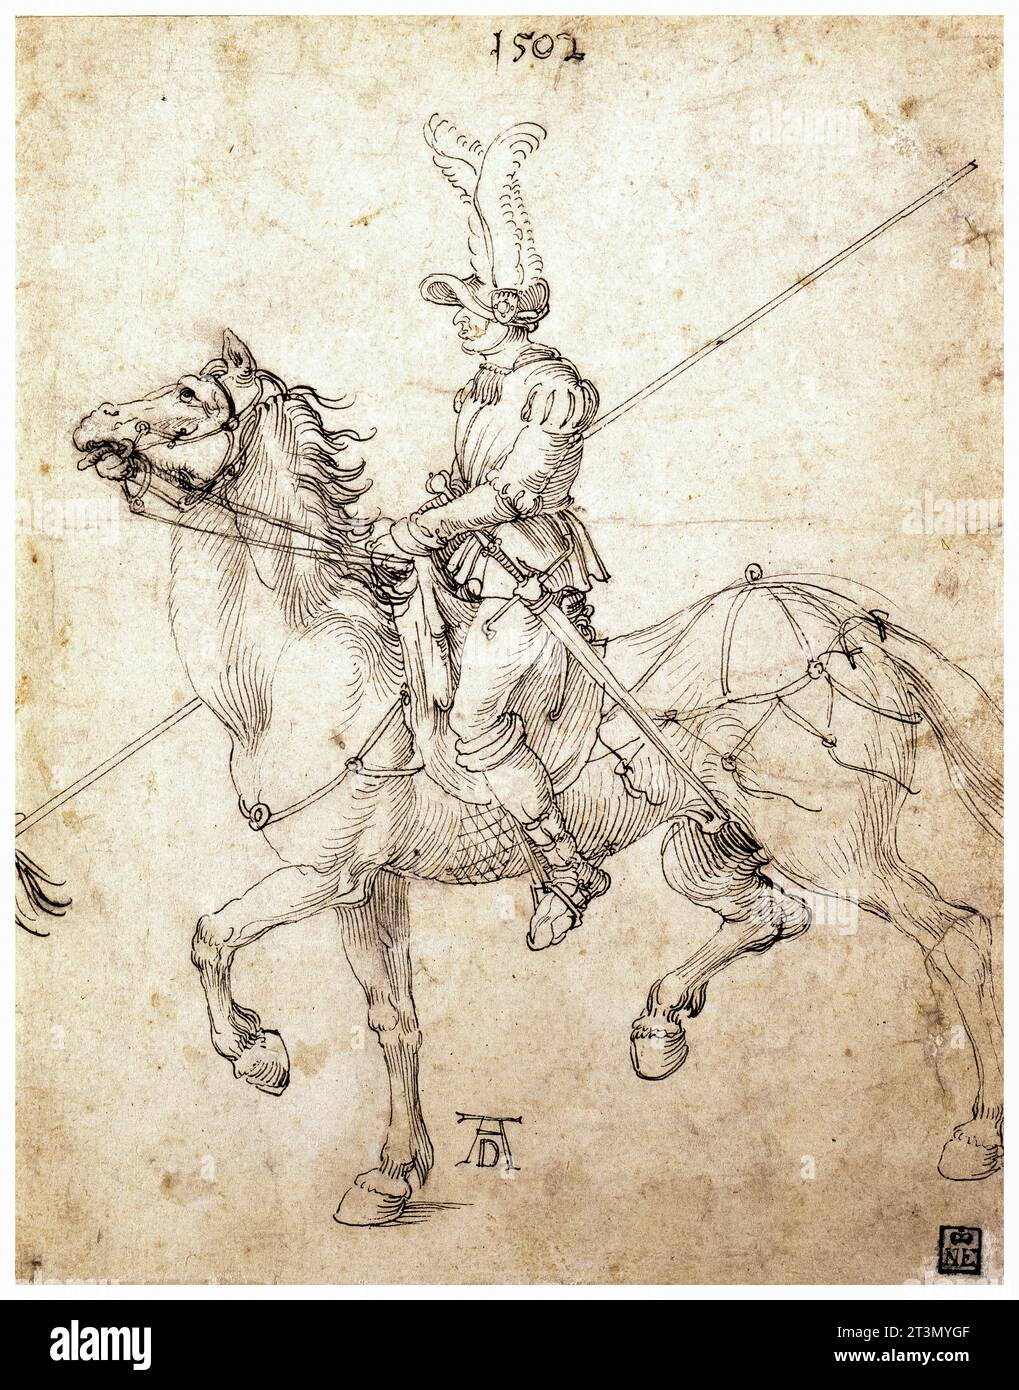 Albrecht durer, Lancer on Horseback, disegno a penna e inchiostro, 1502 Foto Stock